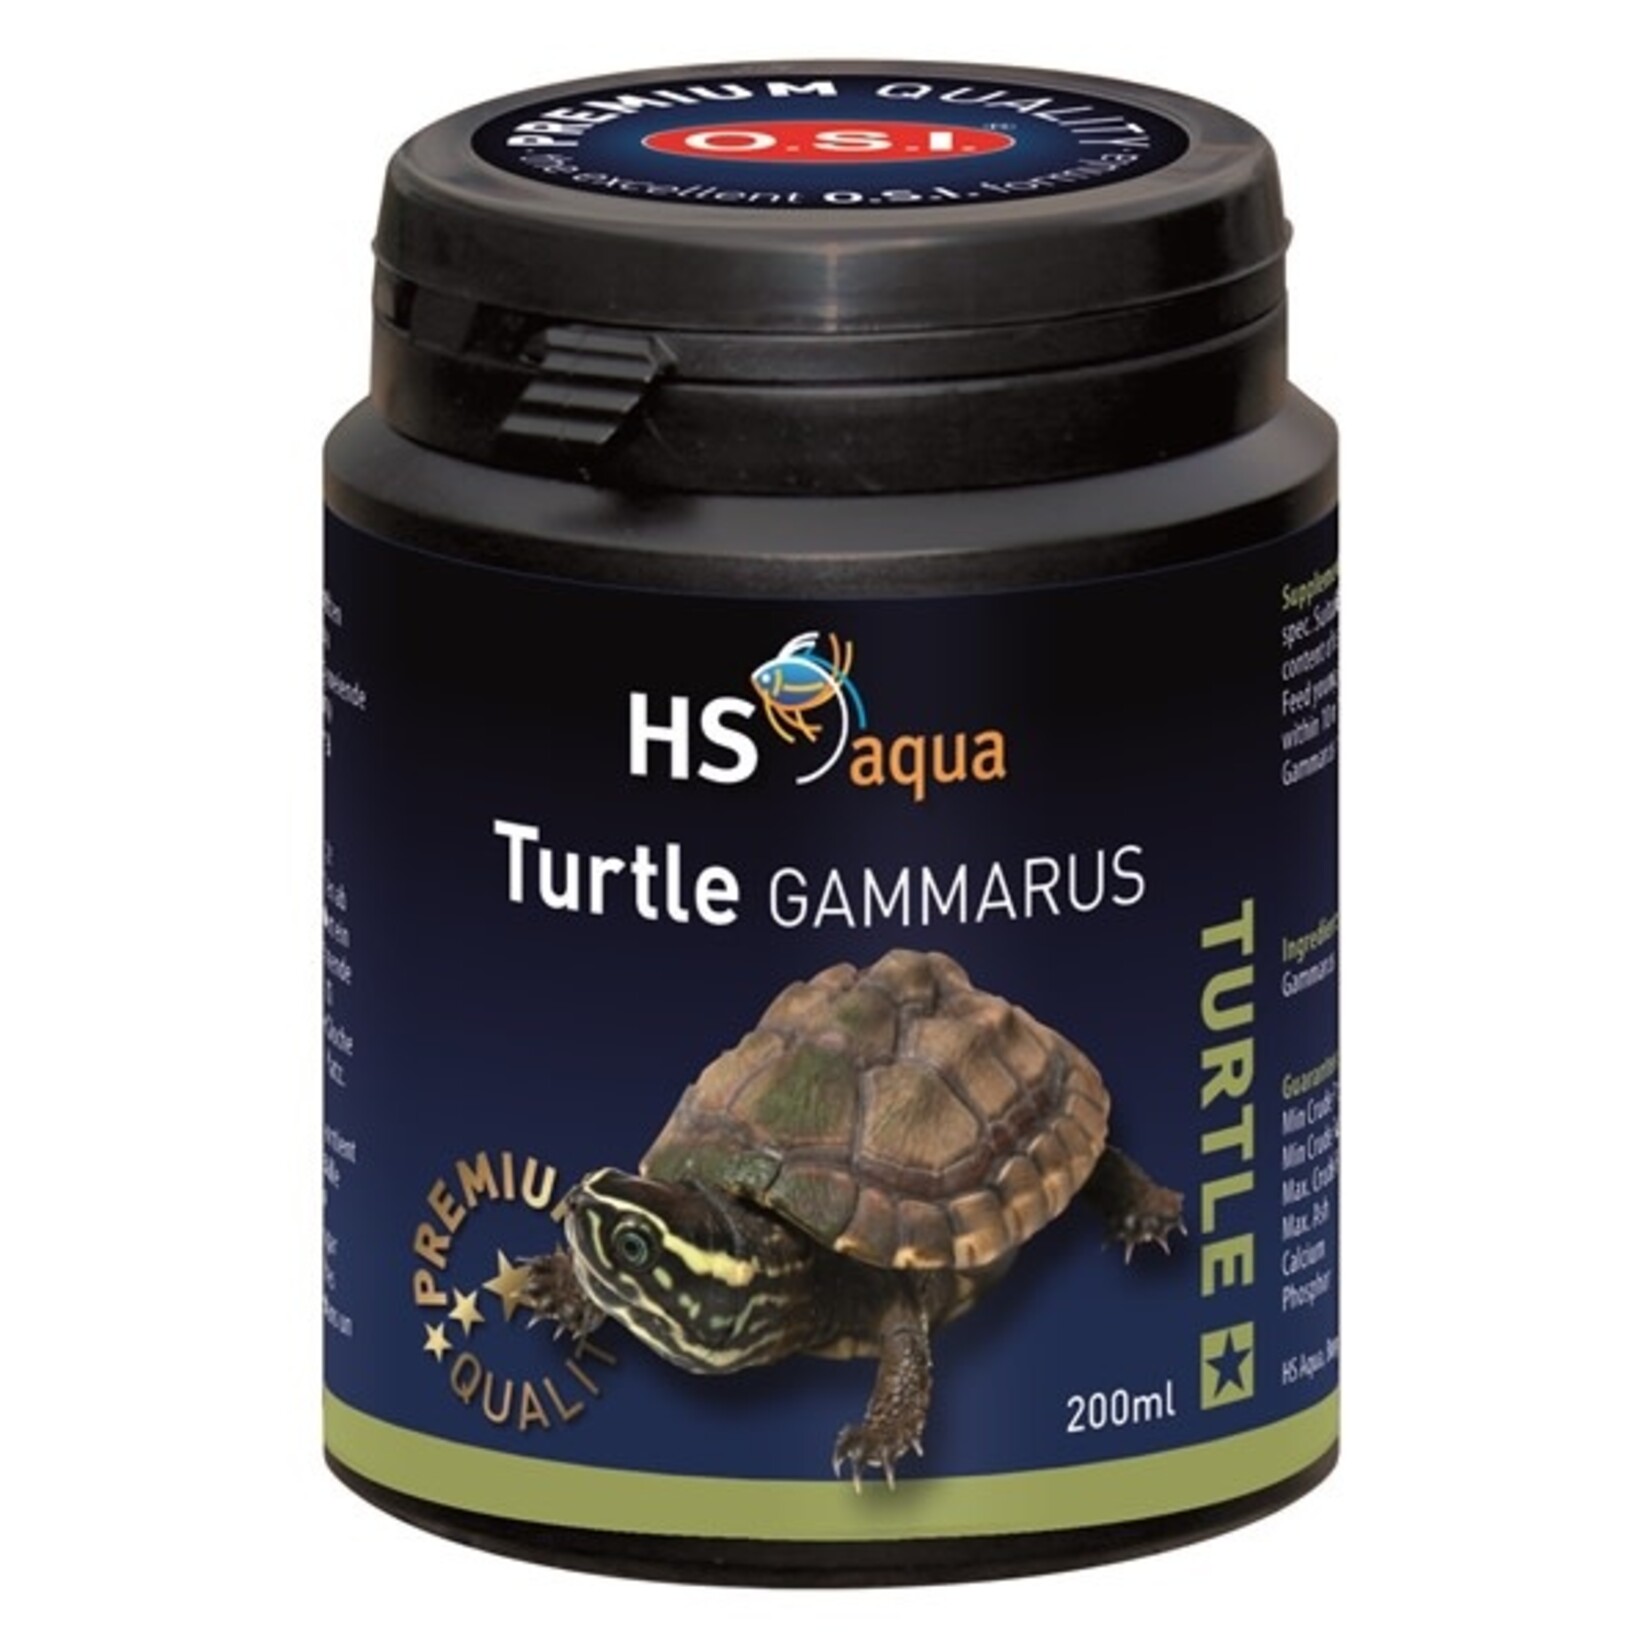 HS Aqua Turtle gammarus 200 ml